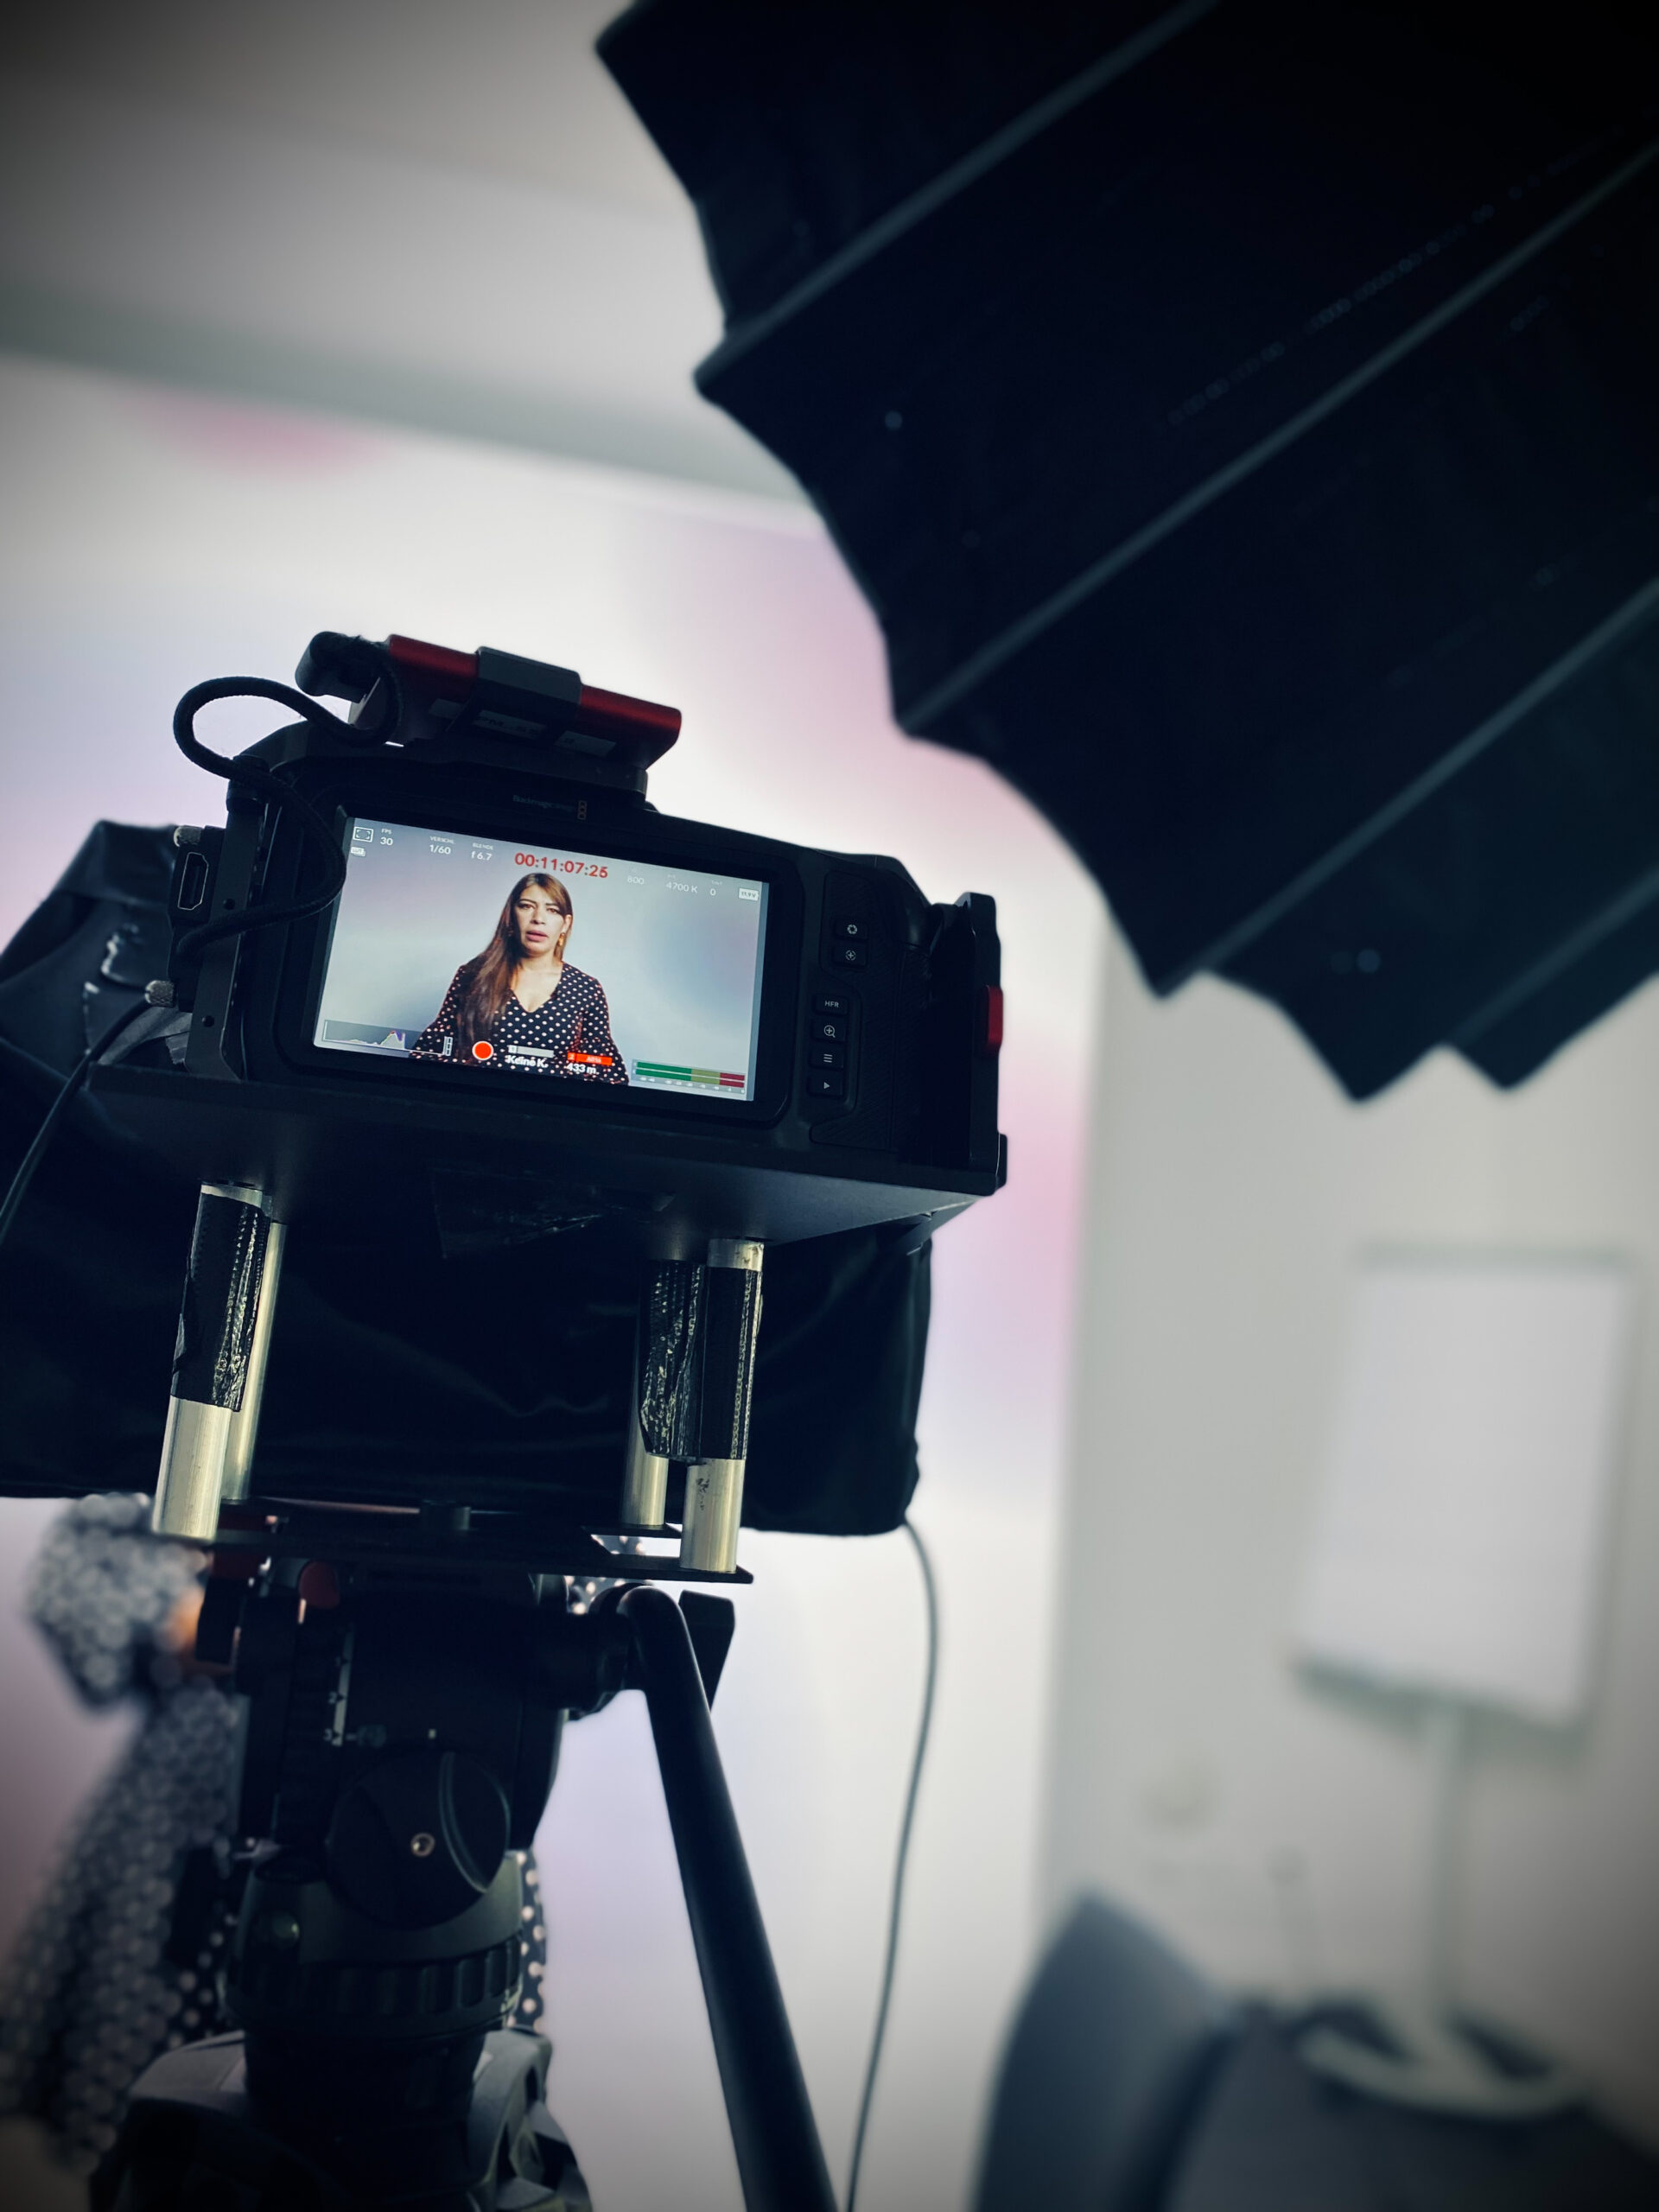 Kameramonitor zeigt eine ausgeleuchtete Frau für ein Webmeeting im Livestream